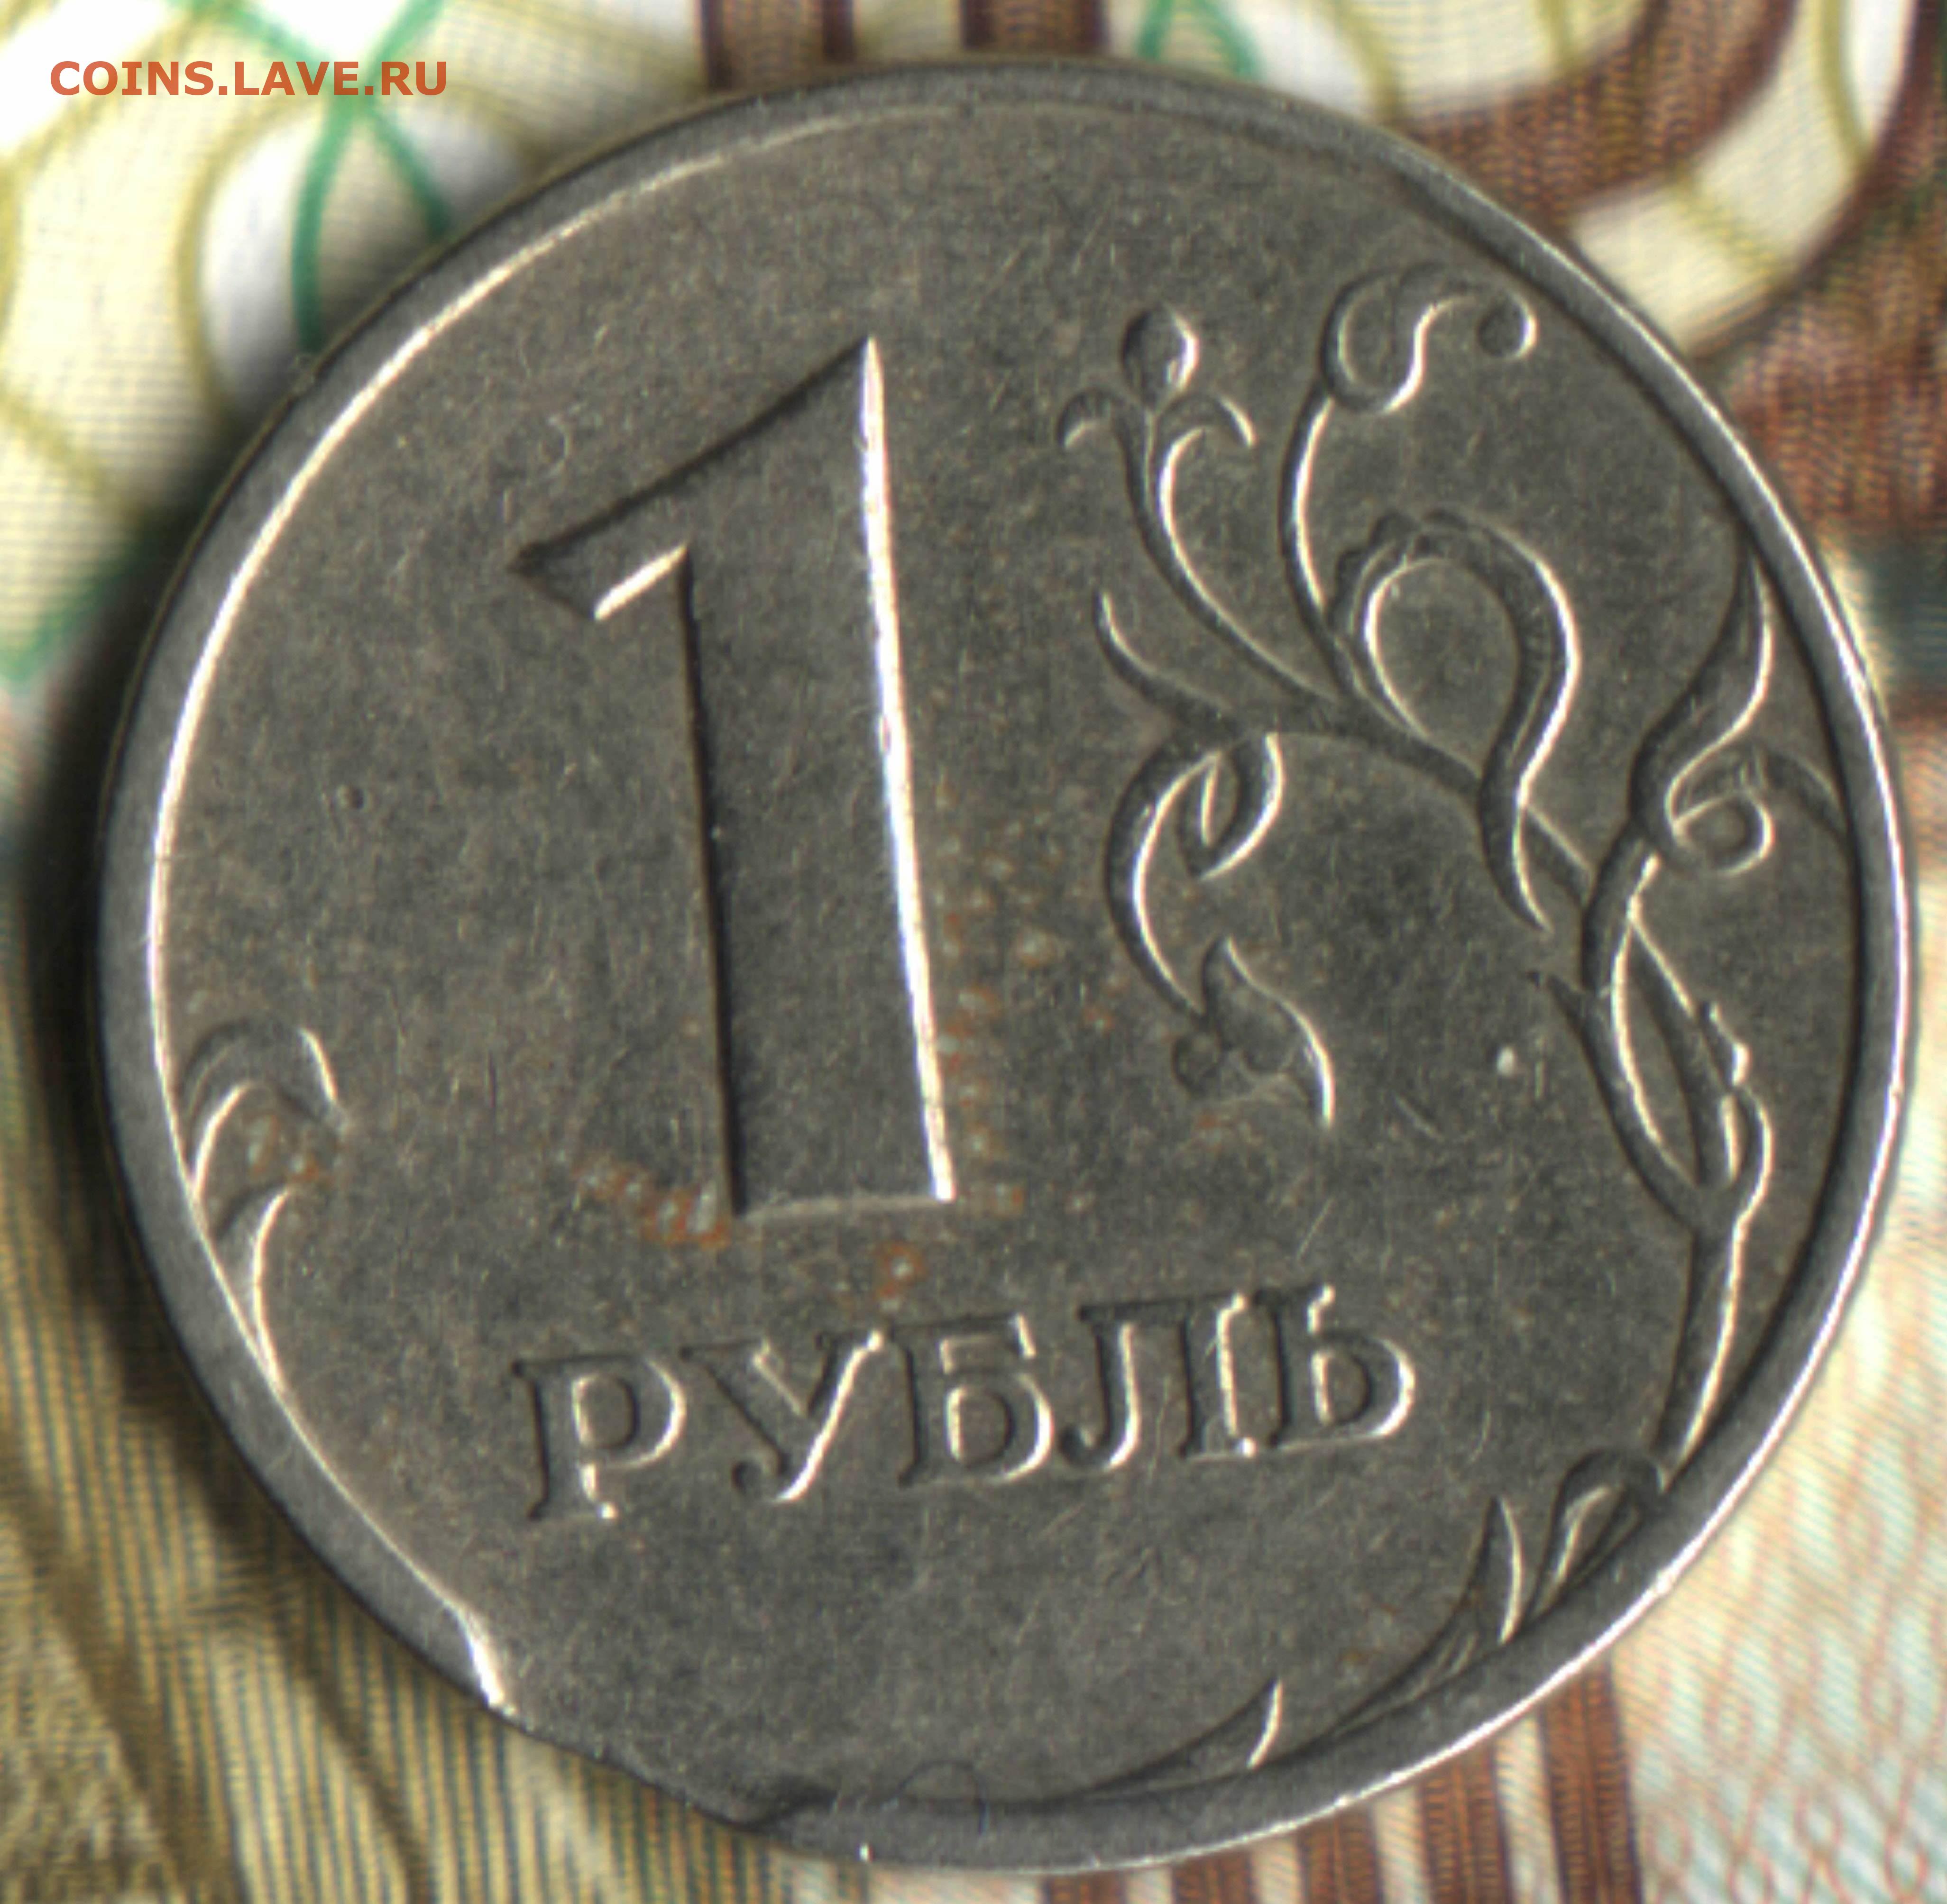 Монеты 2006 года цена. 1 Рубль 2006 ММД. 1 Руб 2006 ММД. 1 Рубль 1997 реверс-реверс. Бракованная монета 1 рубль.